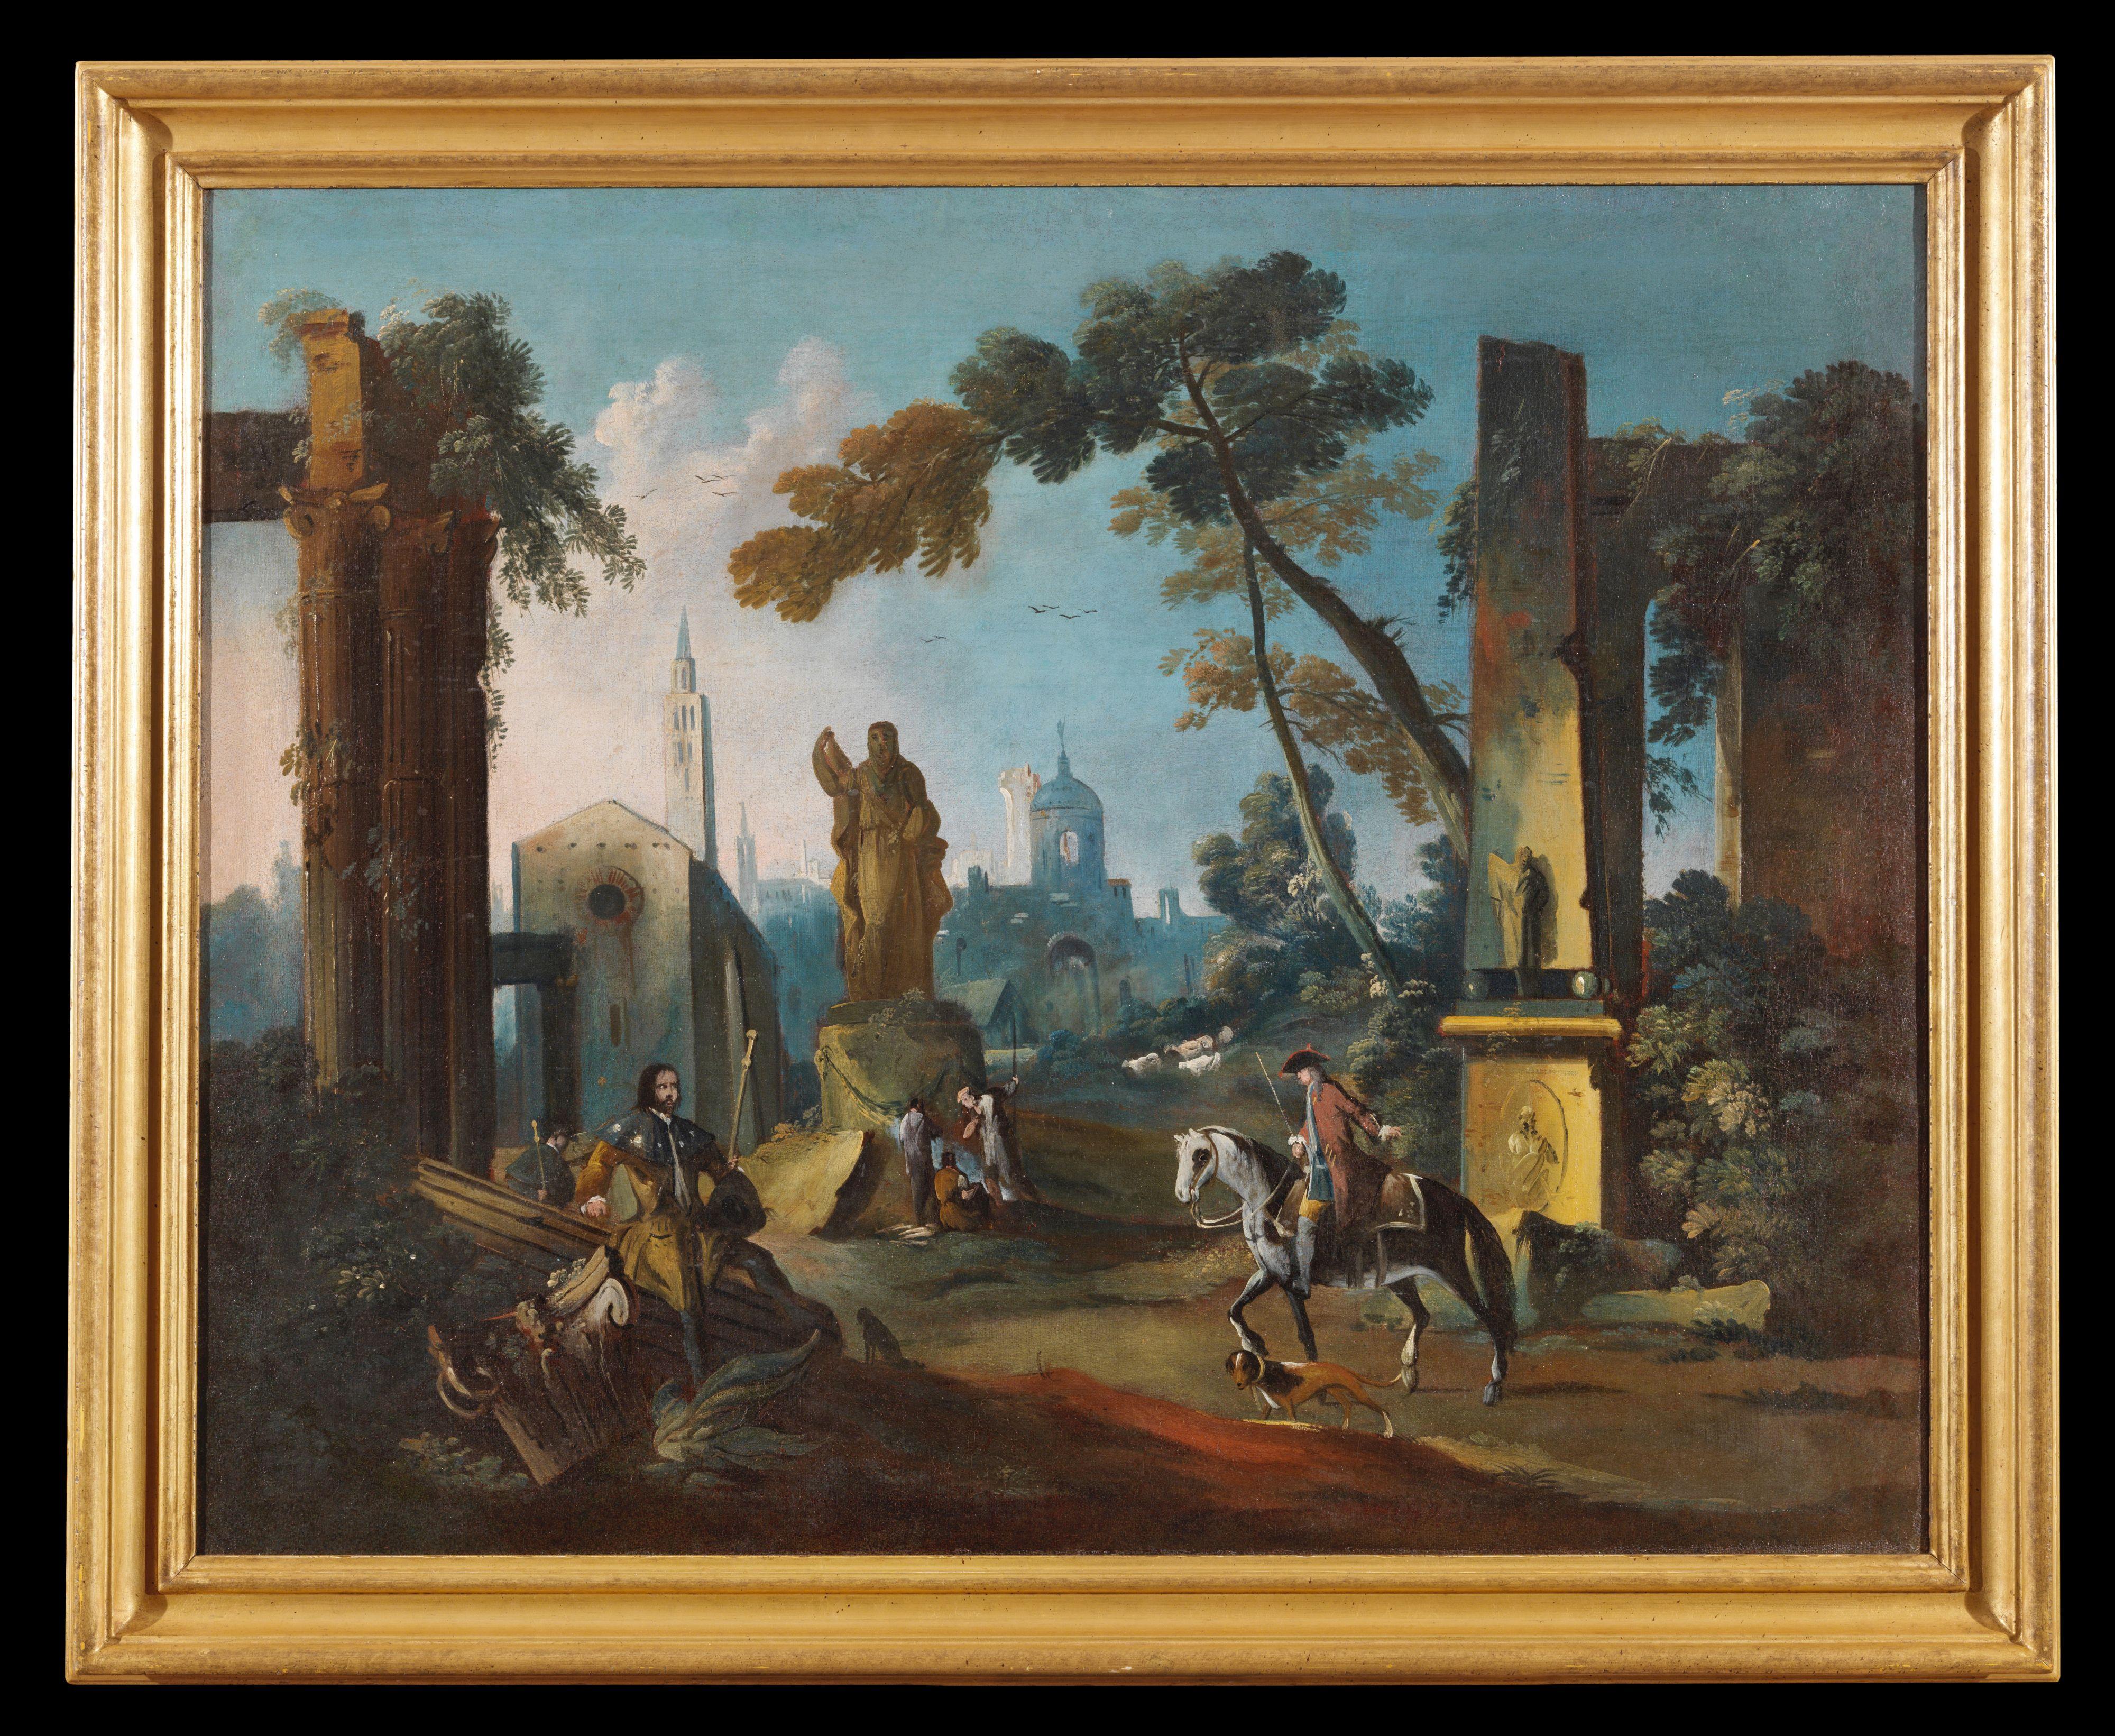 Peinture à l'huile sur toile mesurant 85 x 110 cm sans cadre et 103 x 126 cm avec cadre représentant un paysage avec des personnages le long du chemin.

Dans l'œuvre en question, qui représente une grande pièce de campagne, se déploie la poétique